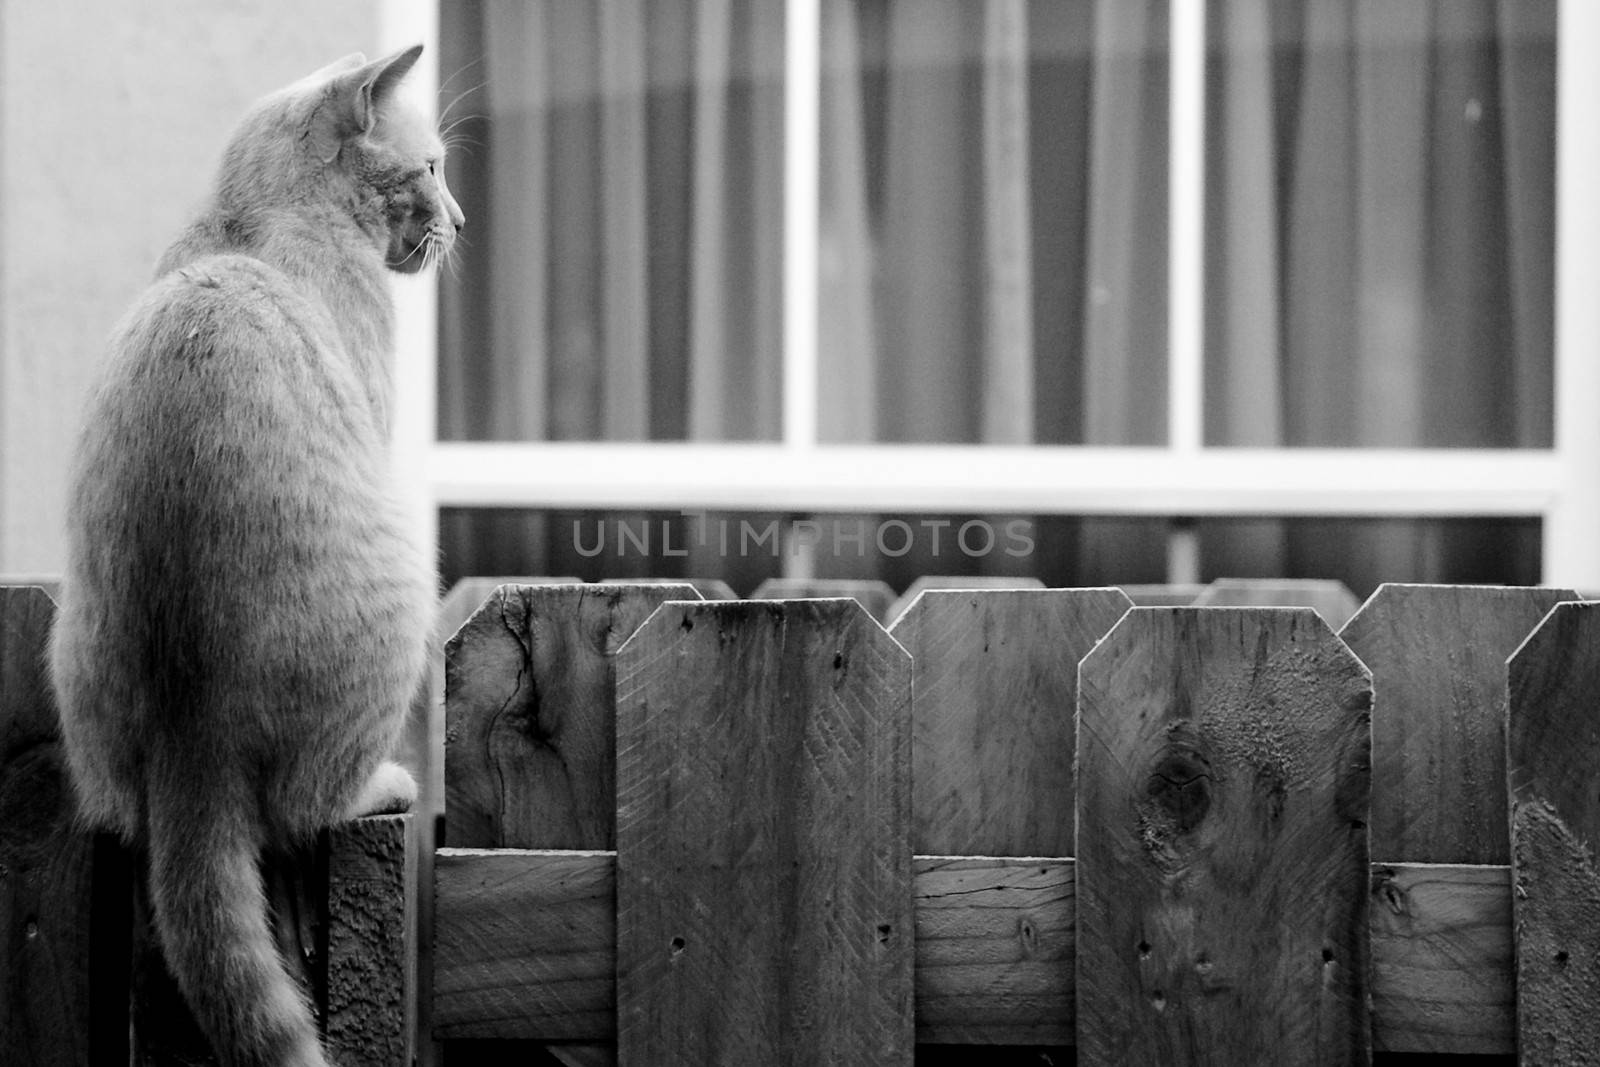 Cat on the fence by CelsoDiniz